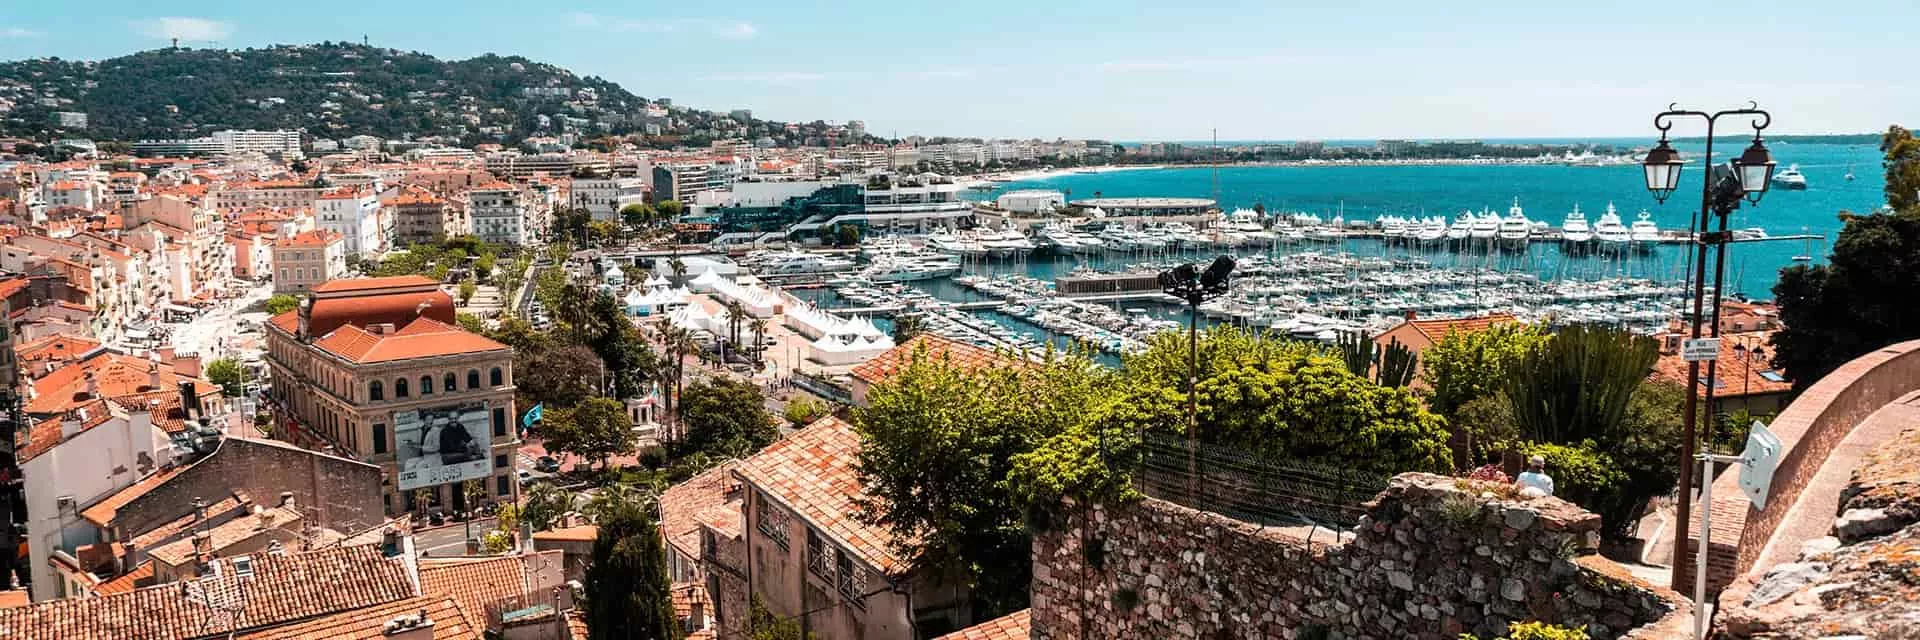 Vacances à Mandelieu-la-Napoule, près de Cannes - Côte d'Azur